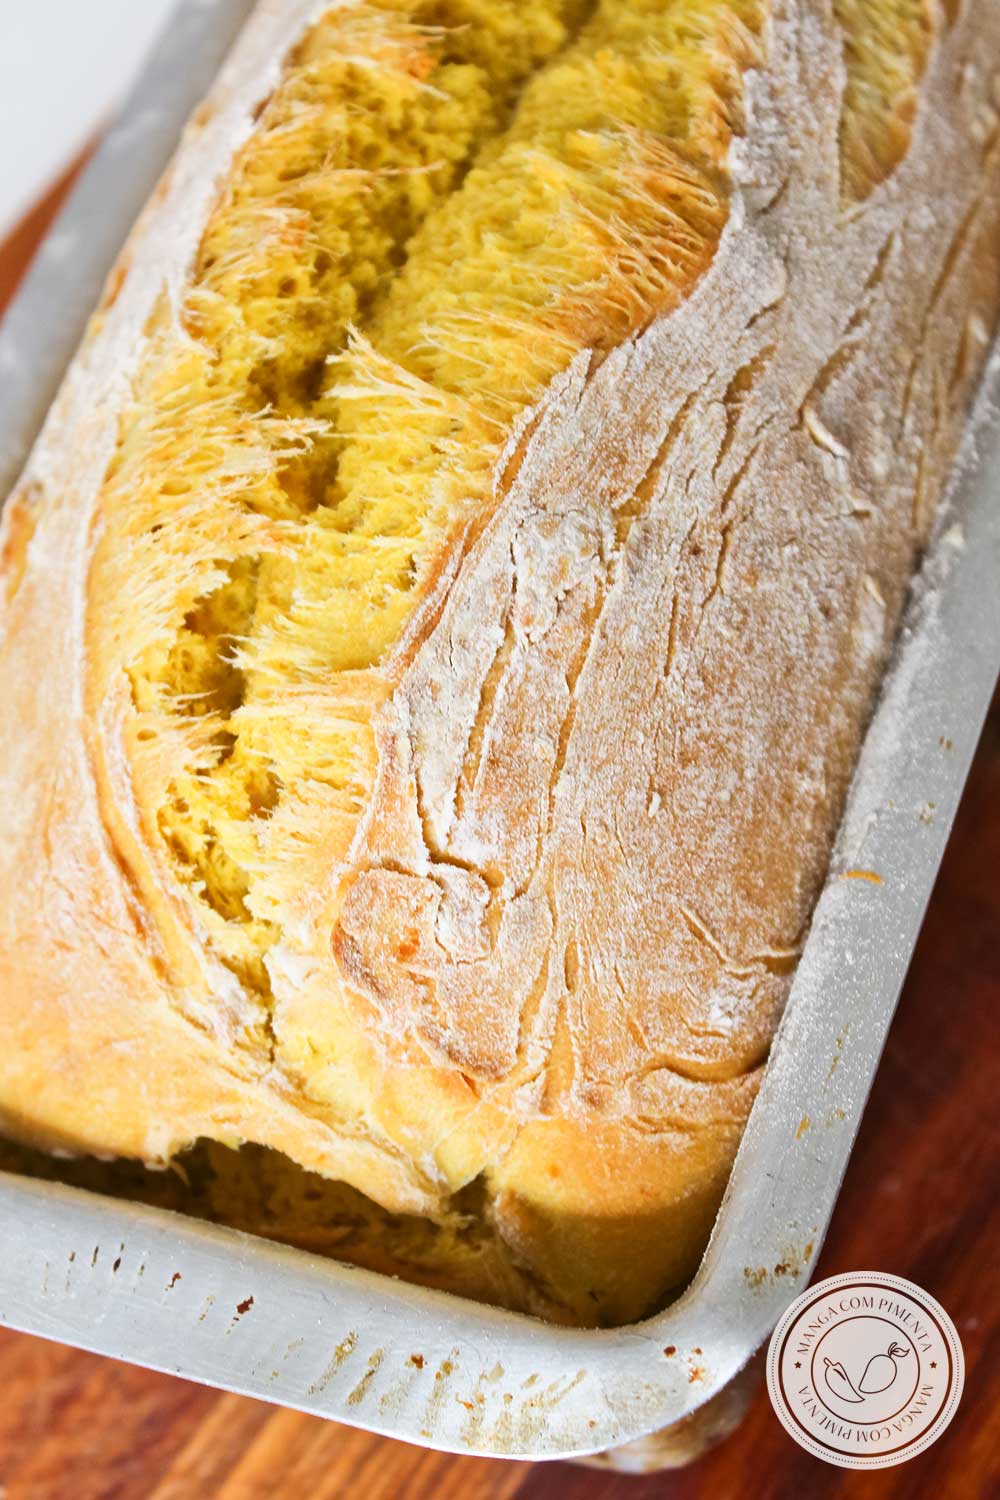 Receita de Pão de Abóbora - prepare um lanche caseiro saboroso no final de semana!